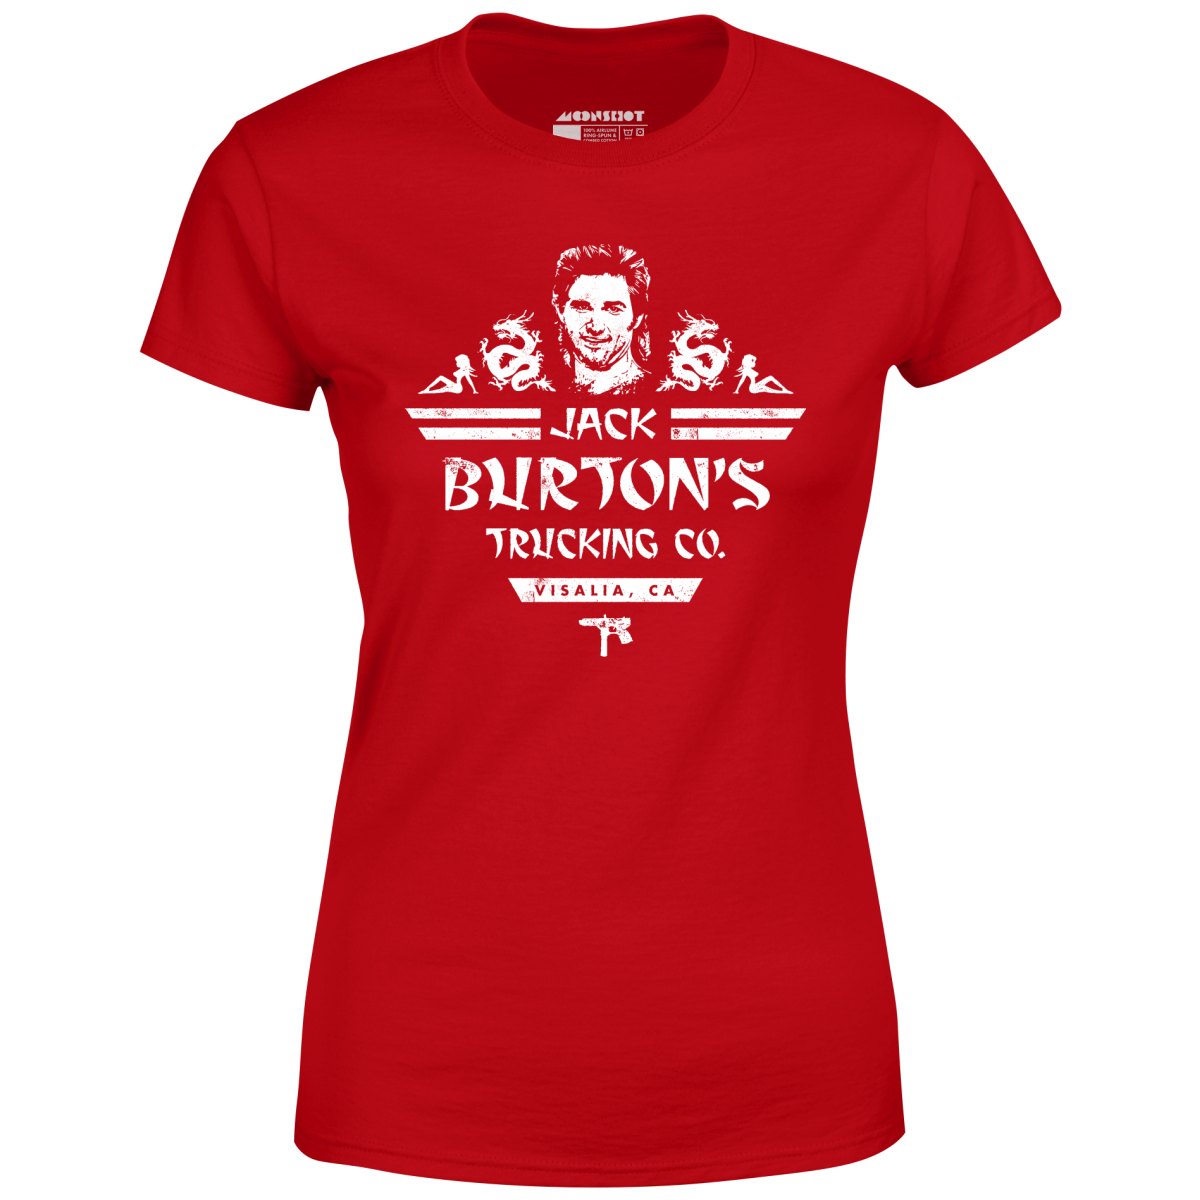 Jack Burton's Trucking Co. - Women's T-Shirt